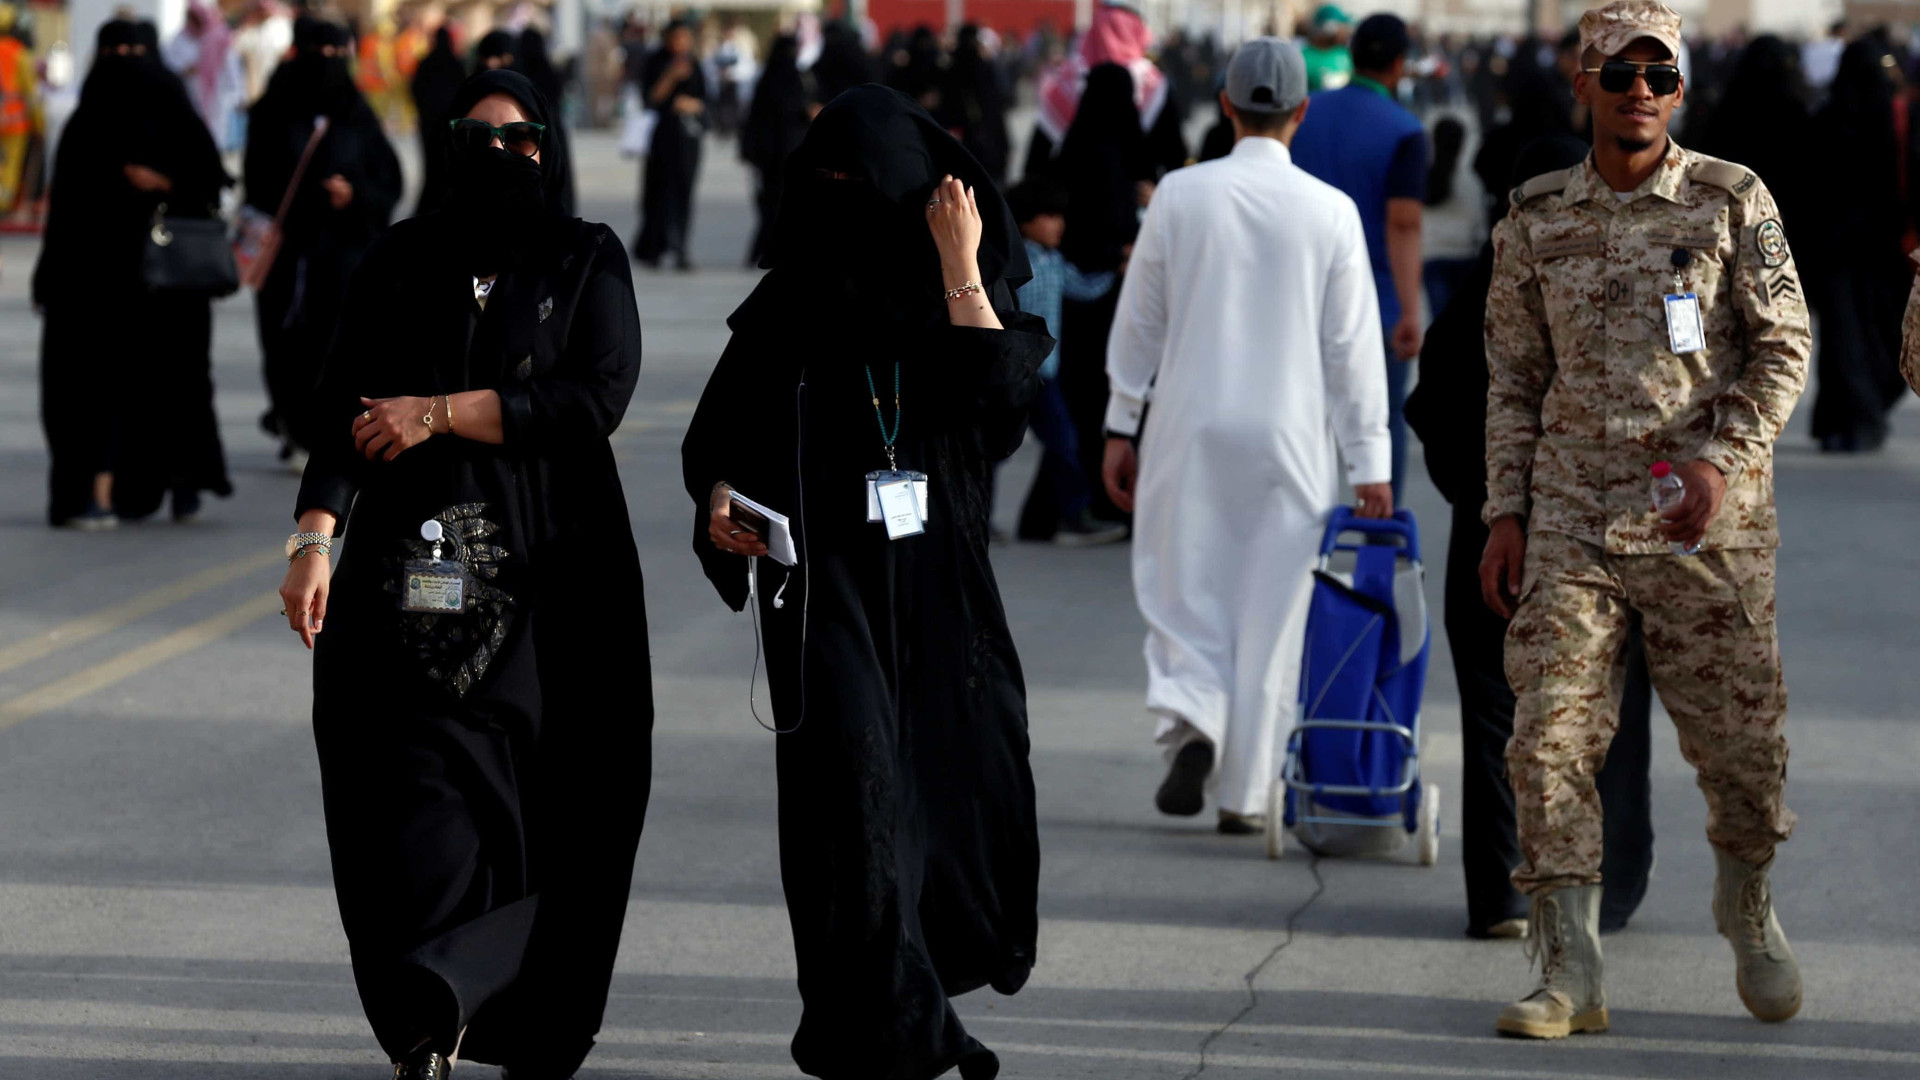 Mulheres da Arábia Saudita poderão se alistar no Exército
